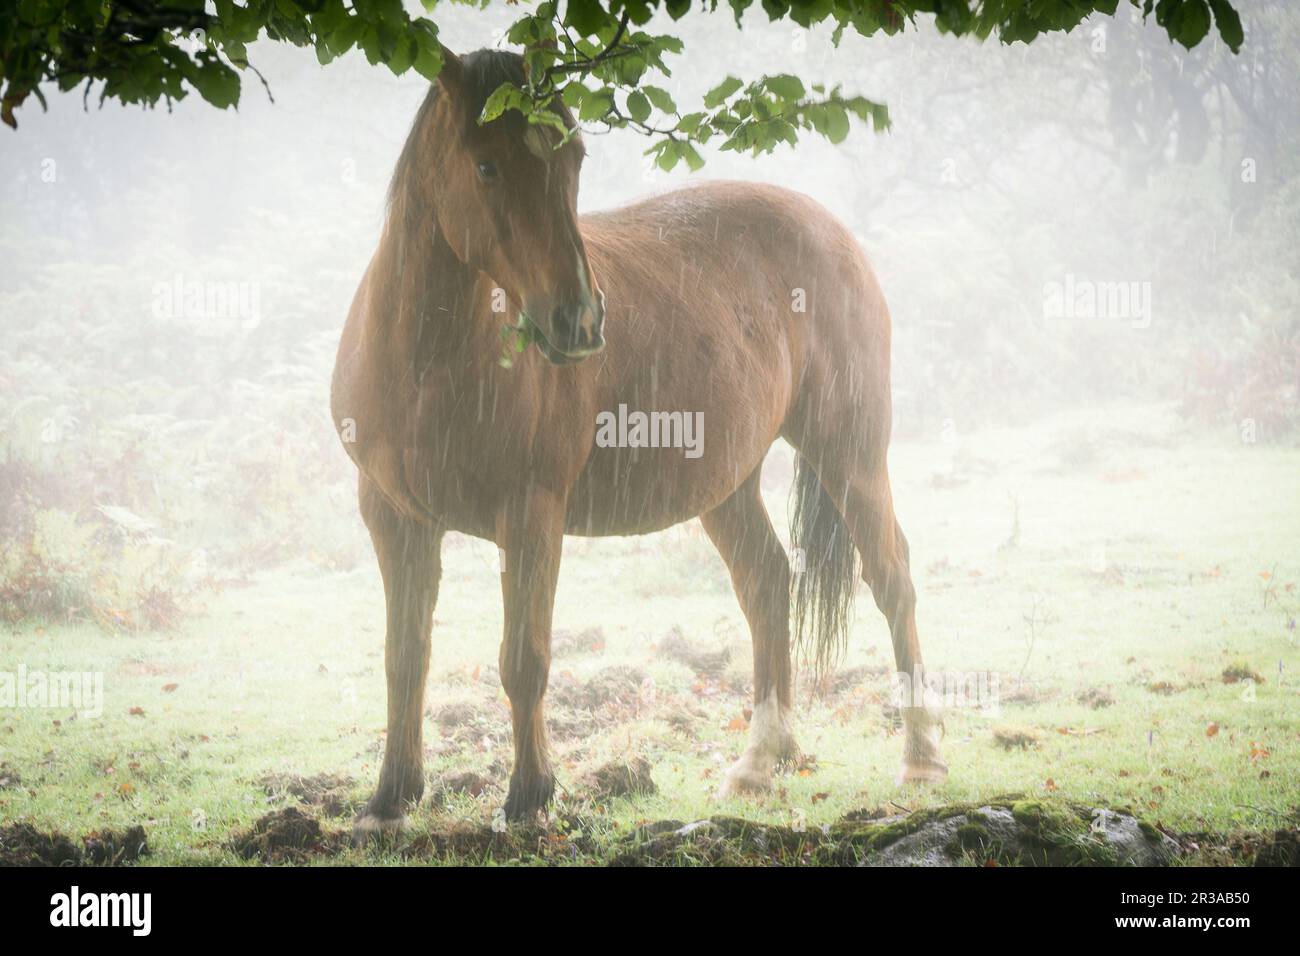 caballo bajo las hayas, fagus Sylvaticus, parque natural Gorbeia,Alava- Vizcaya, Euzkadi, Spain. Stock Photo